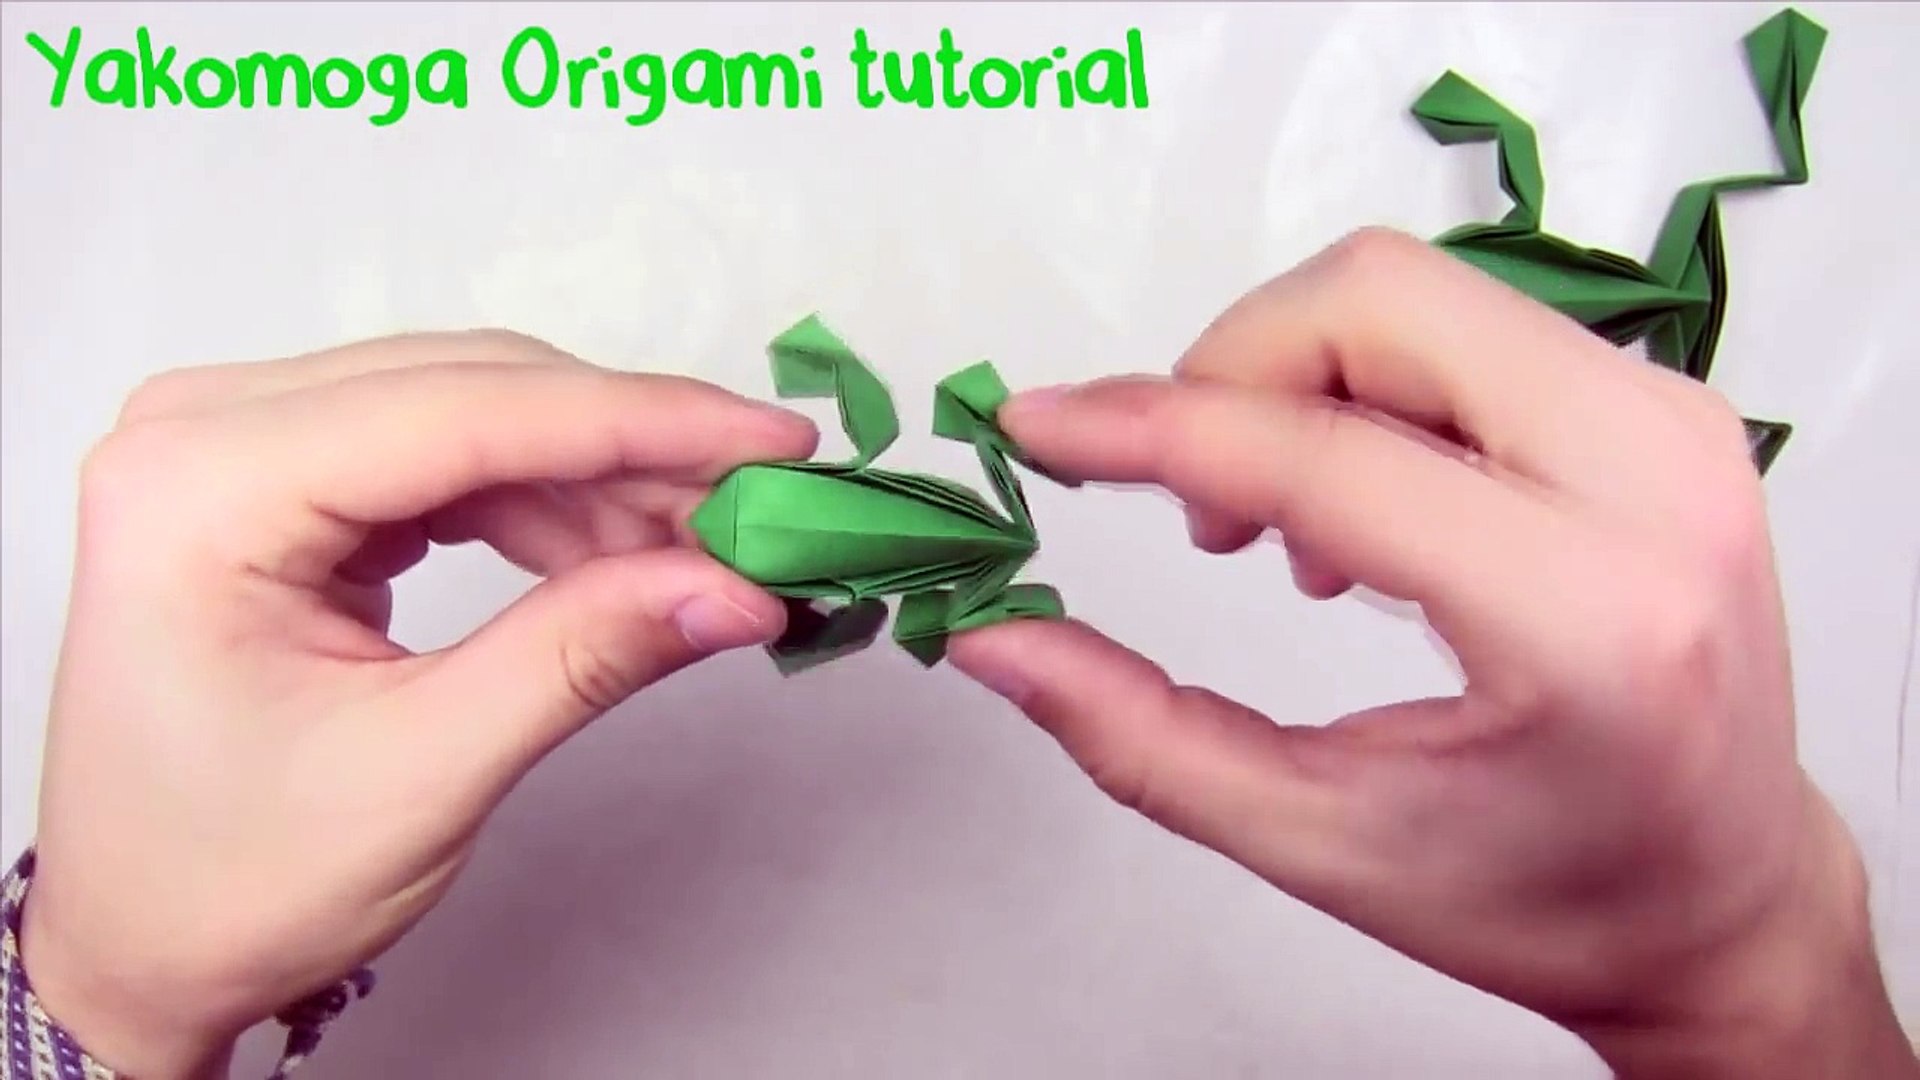 Origami Jumping Frog By Toshikazu Kawasaki Yakomoga Origami Tutorial